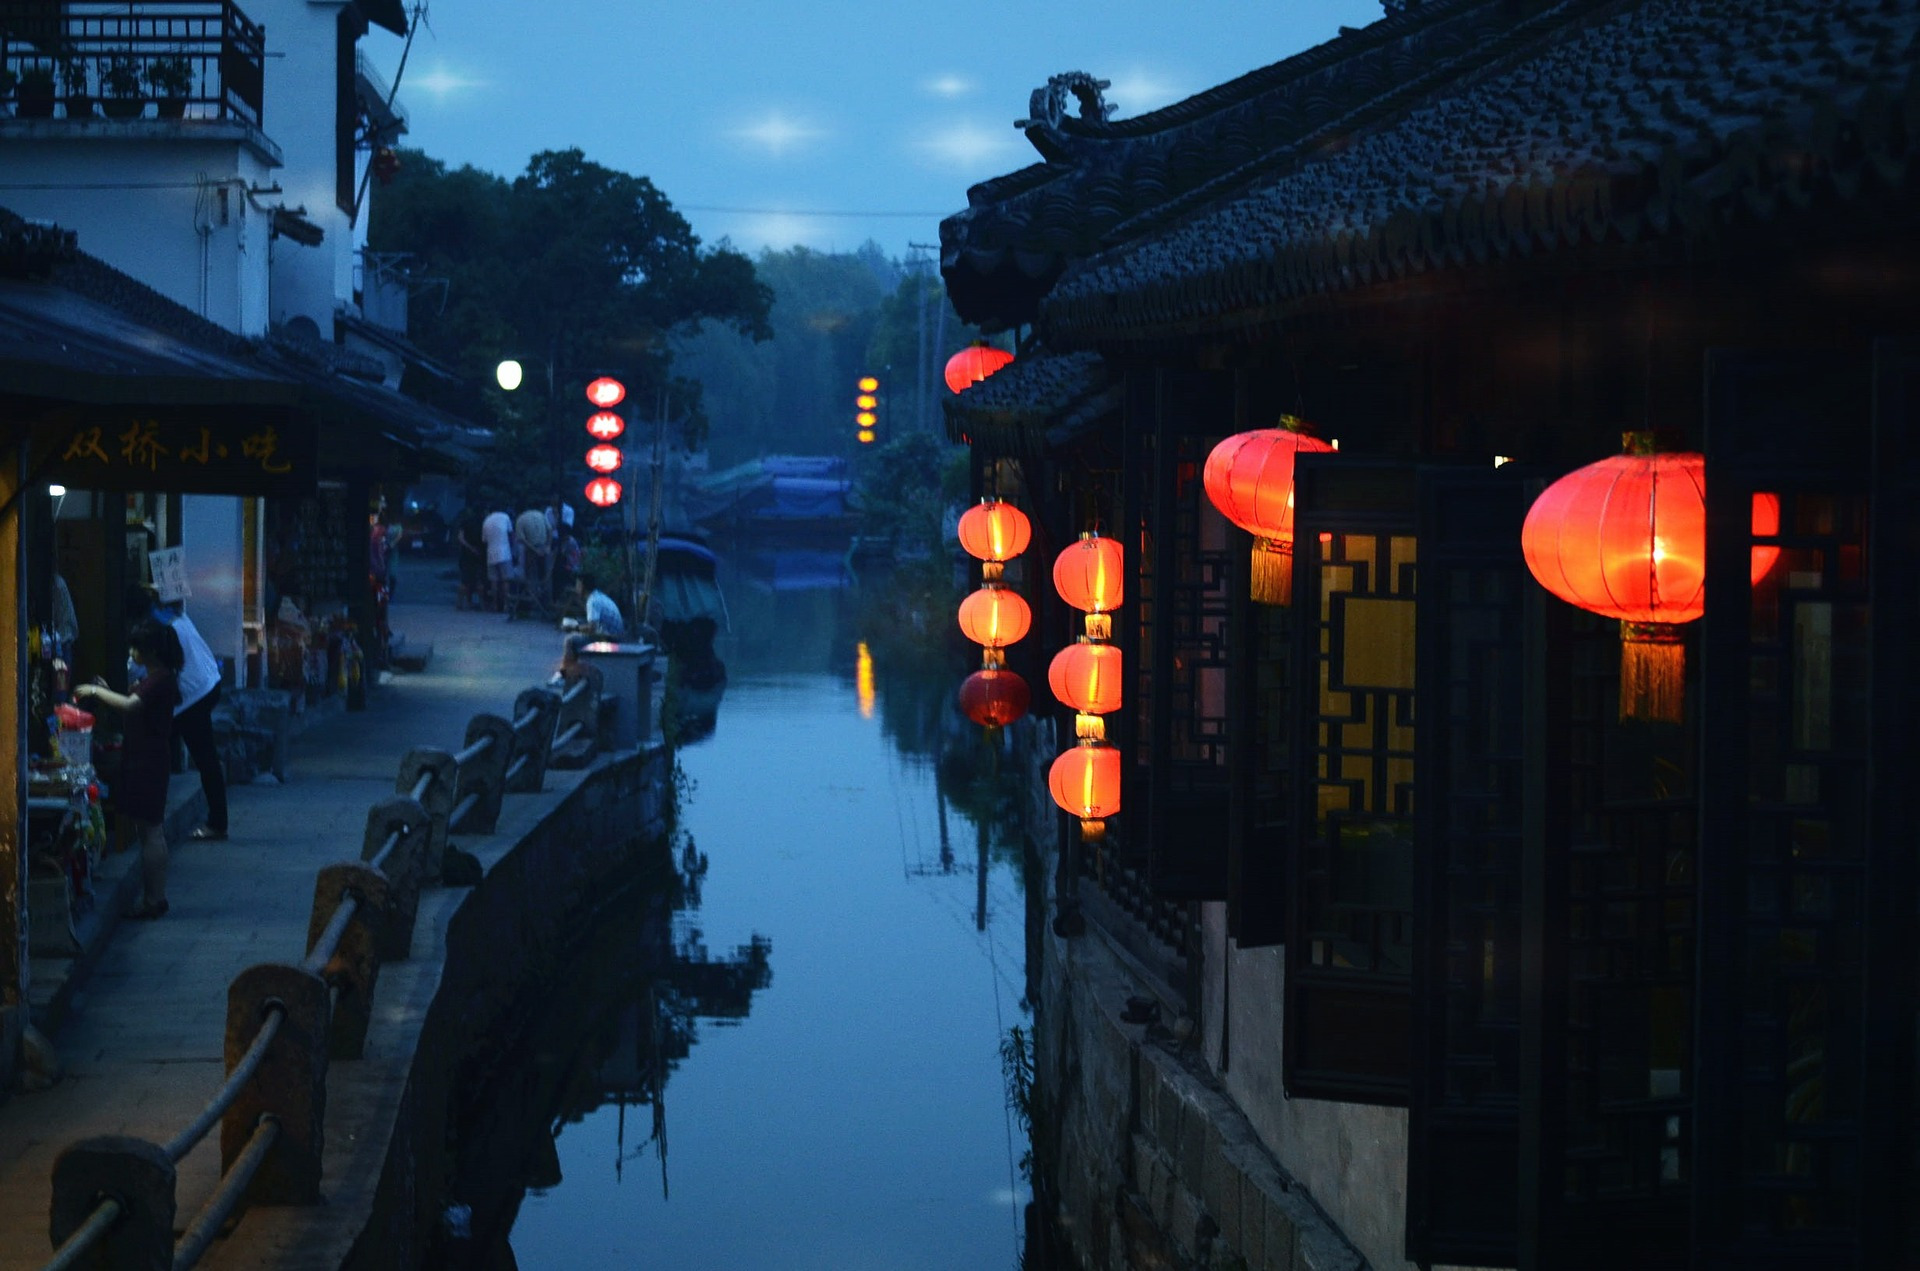 Suzhou water town